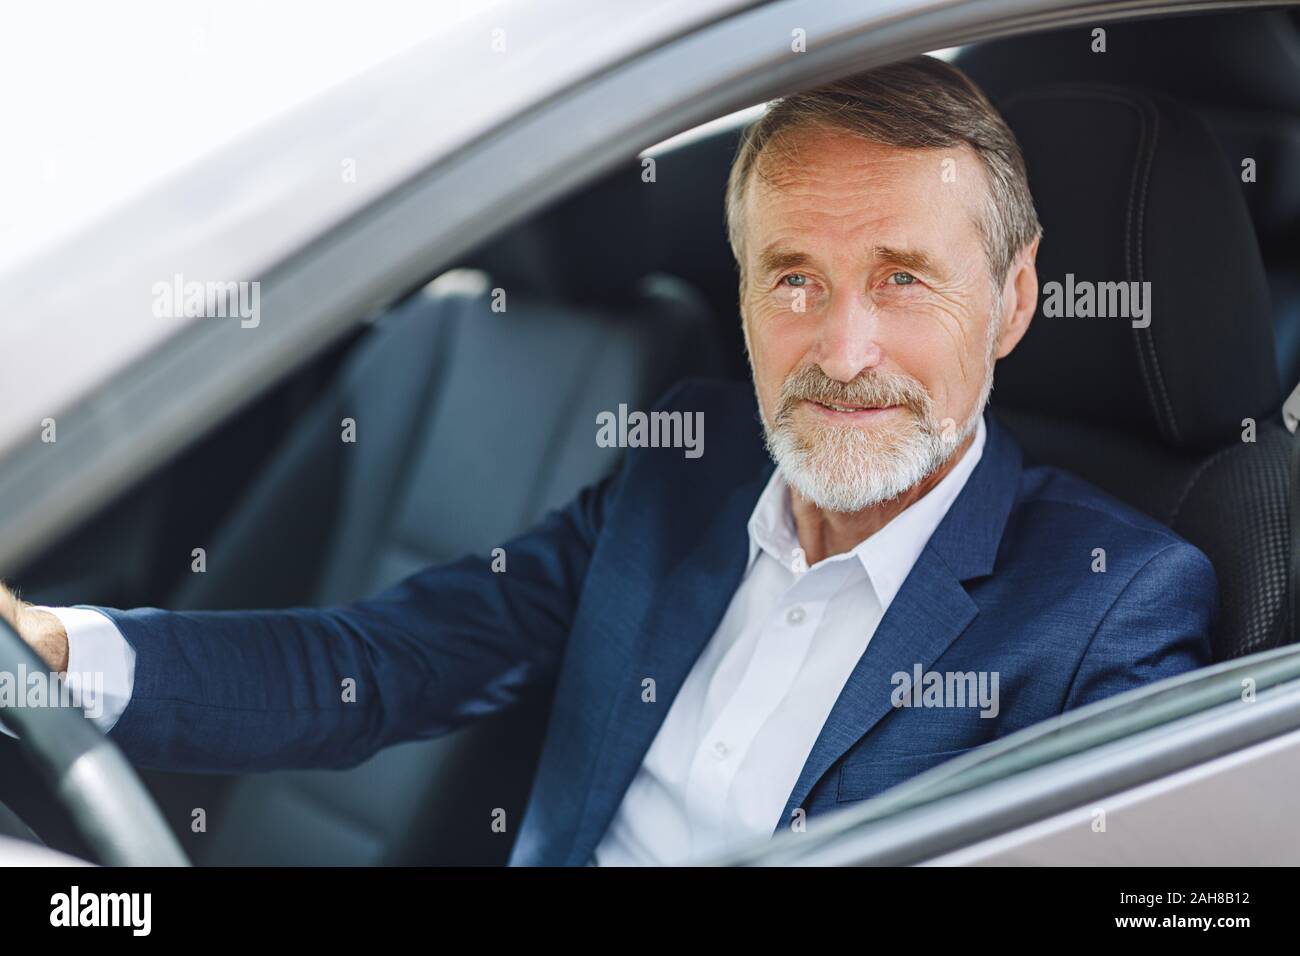 Senior conductor sentado dentro de un automóvil vistiendo ropas formales Foto de stock